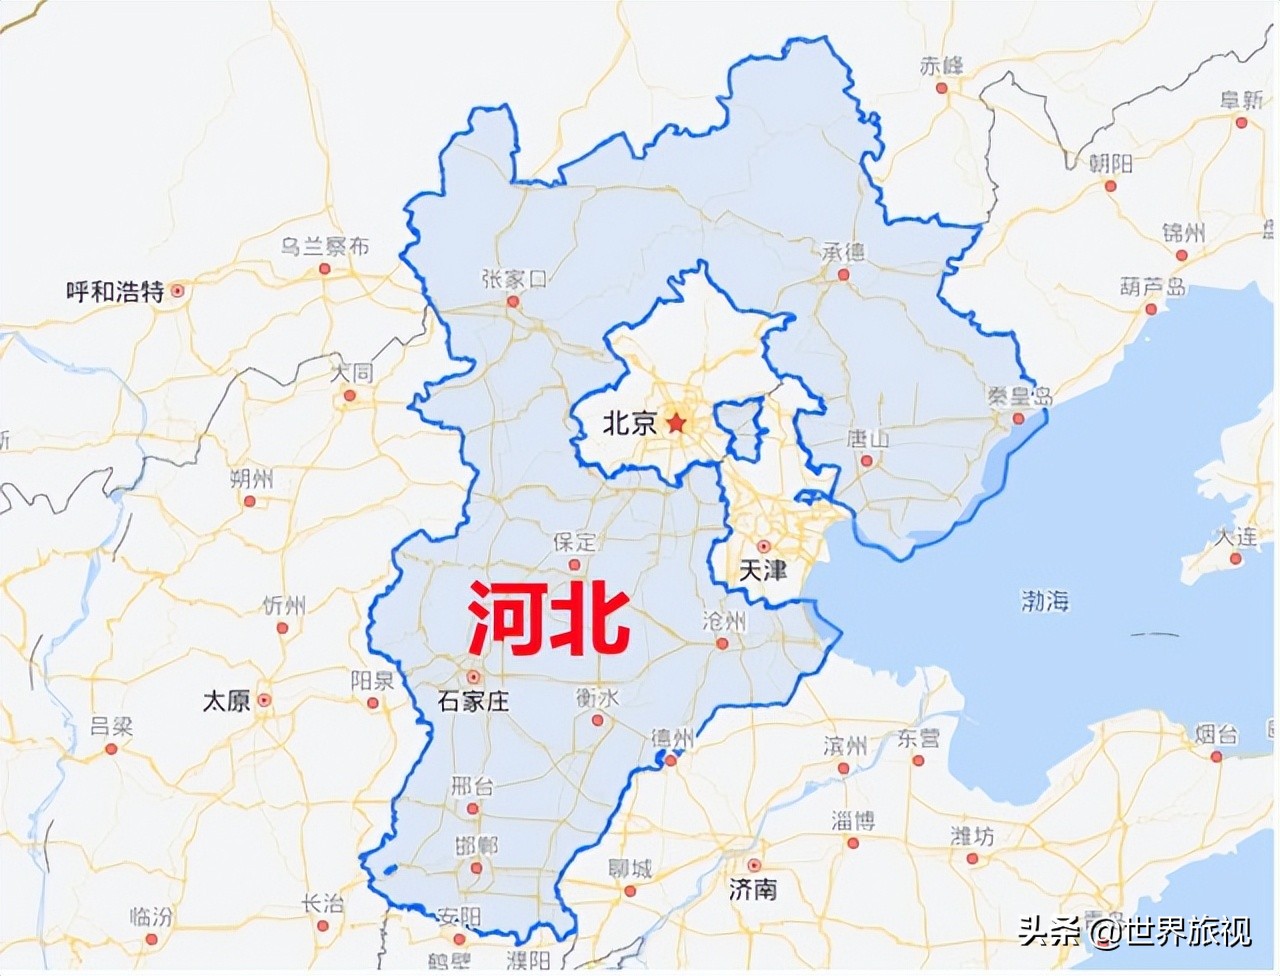 华北5省市区,北京天津包含在河北省内,内蒙古属于华北地区